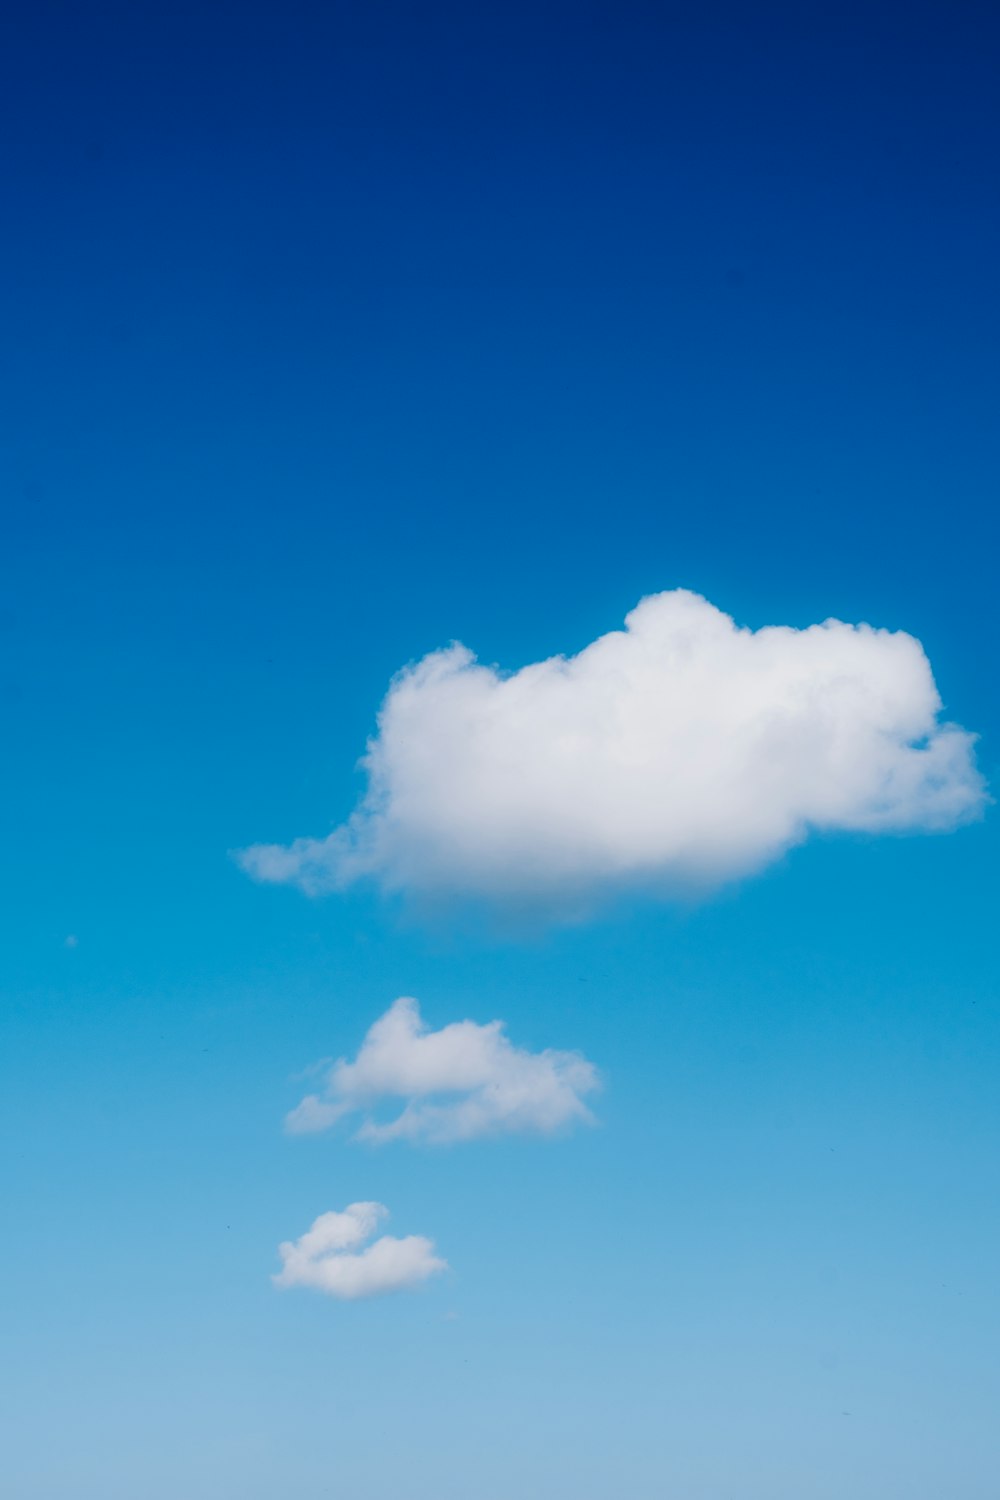 a lone cloud in a blue sky above a beach